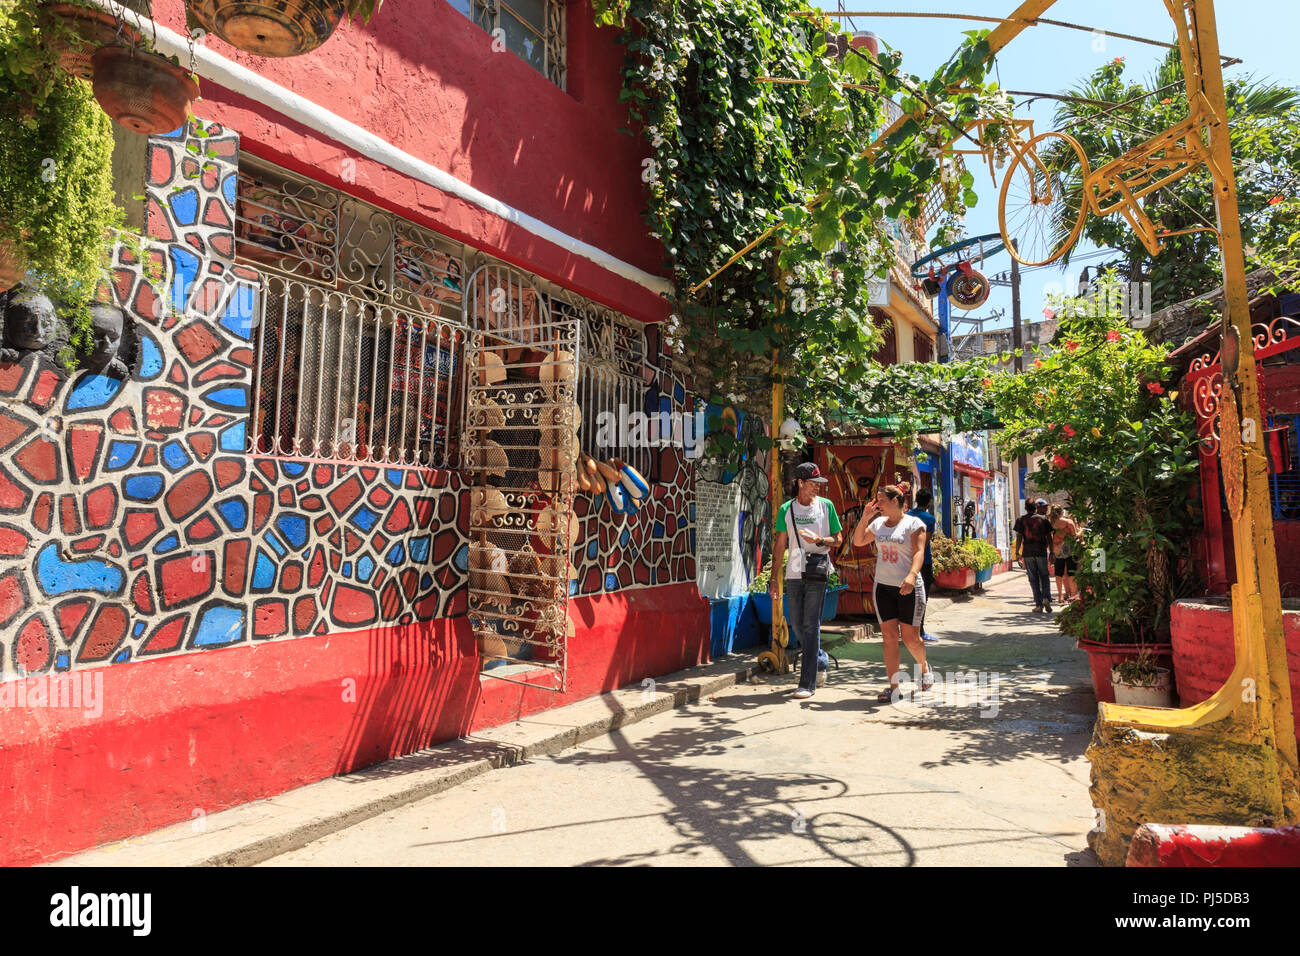 Callejon de Hamel Künstlerviertel, Galerien, kreative Projekte und Kunstszene touristischen Destination, Centro, Havanna, Kuba Stockfoto